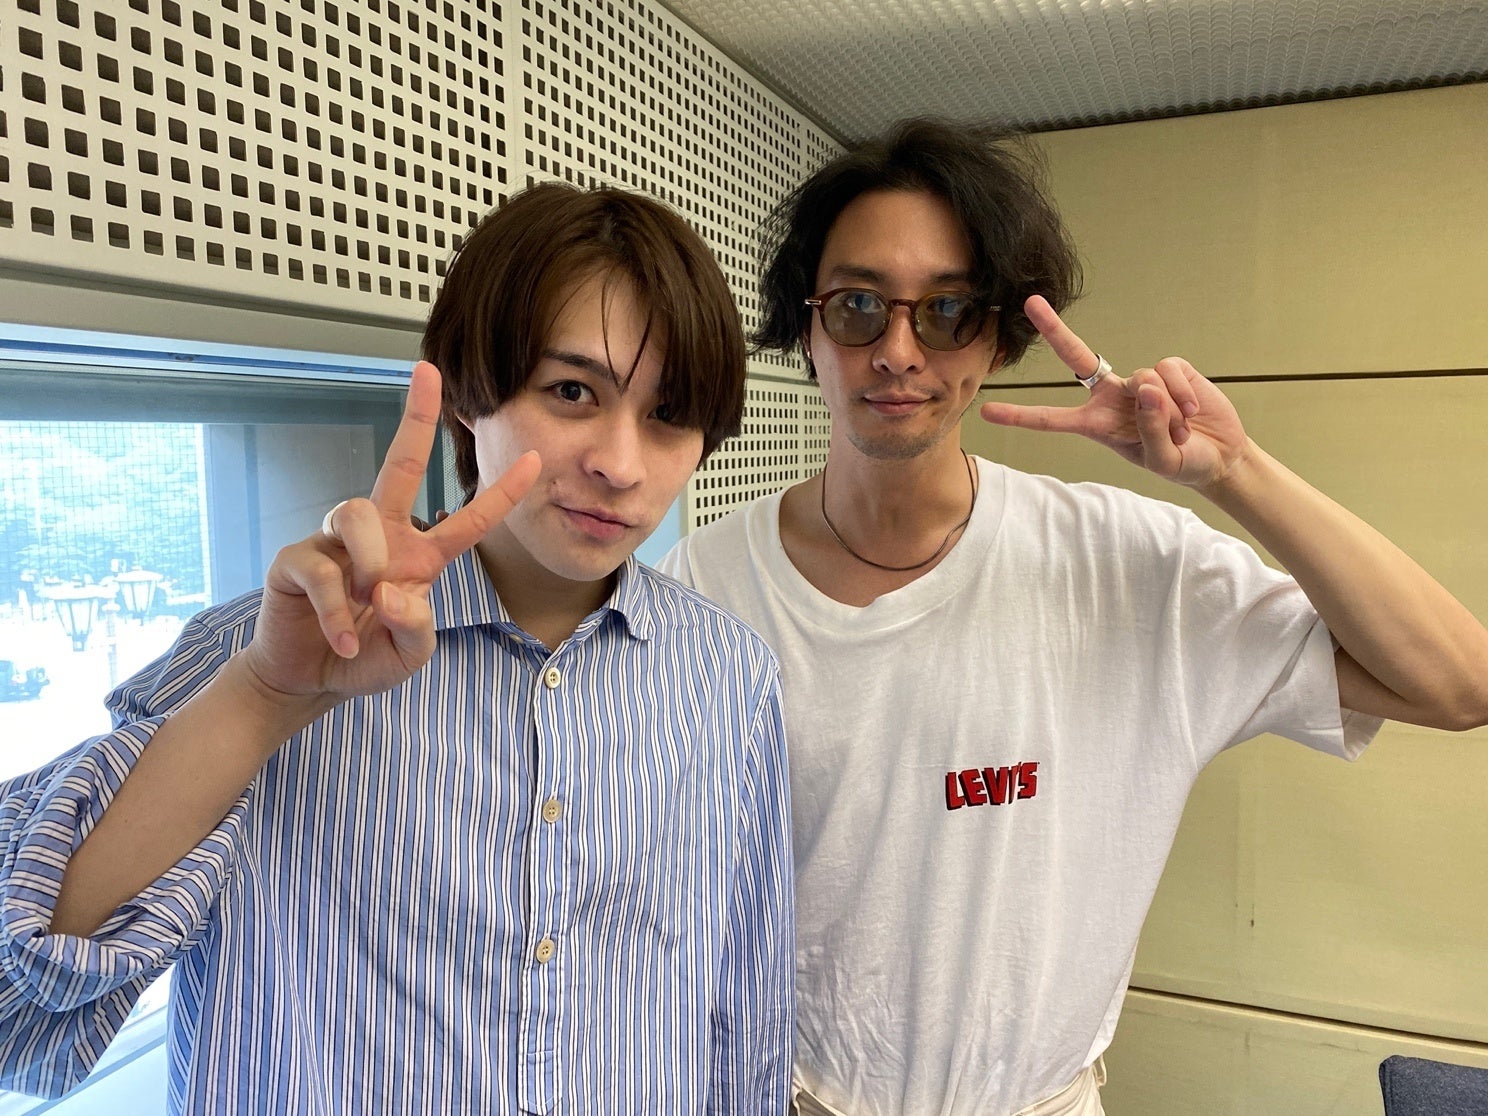 TOKYO FM『THE TRAD』ハマ・オカモトと中川絵美里が下北沢のおすすめスポットを紹介！